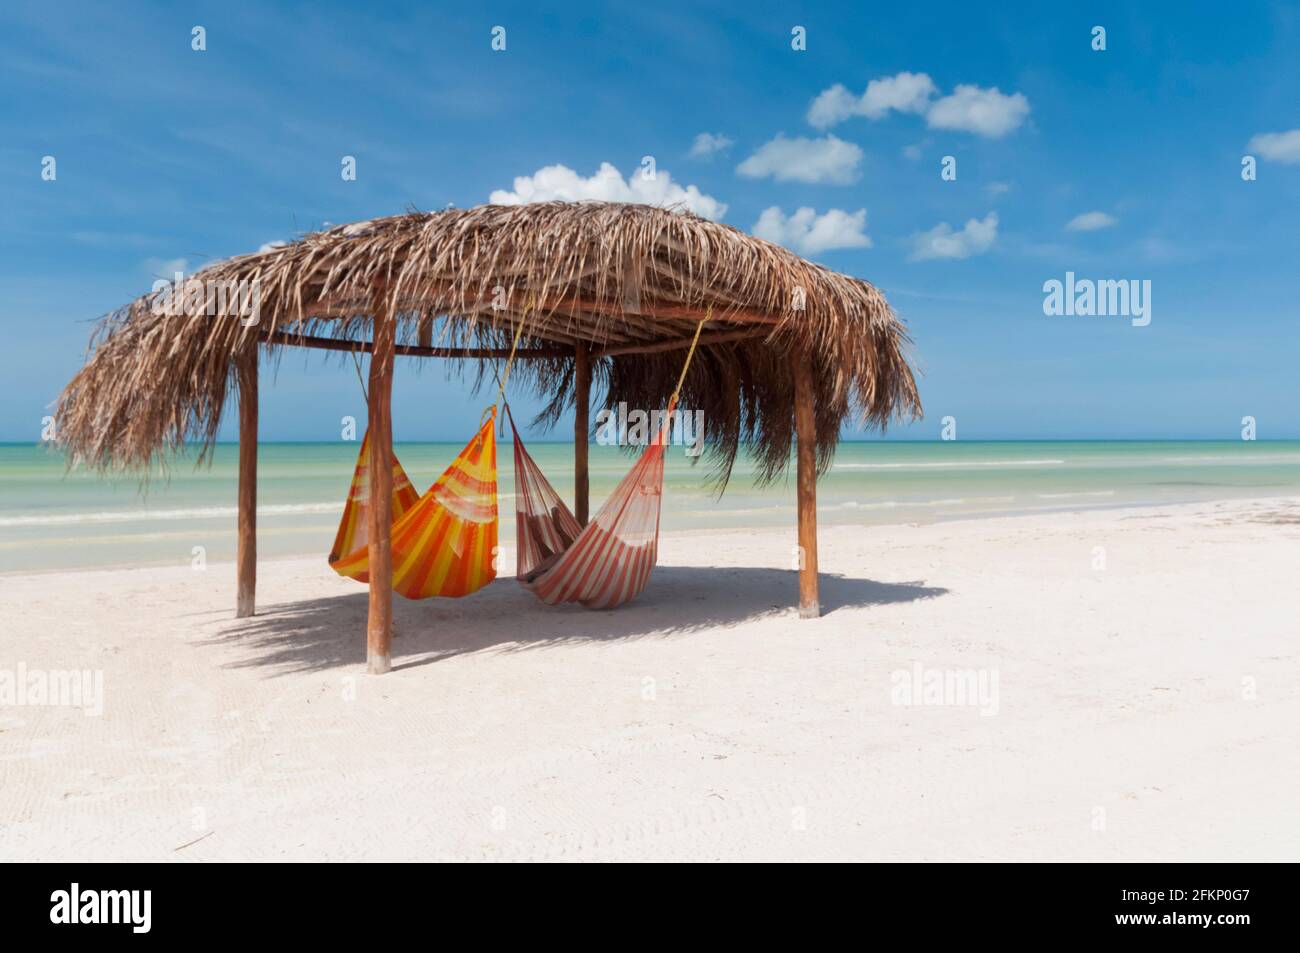 Eine rustikale Hütte mit Hängematten an einem Strand auf Holbox Island in Mexiko, im Hintergrund der blaue Himmel und der Karibische Ozean. Entspannungsreisekonzept Stockfoto